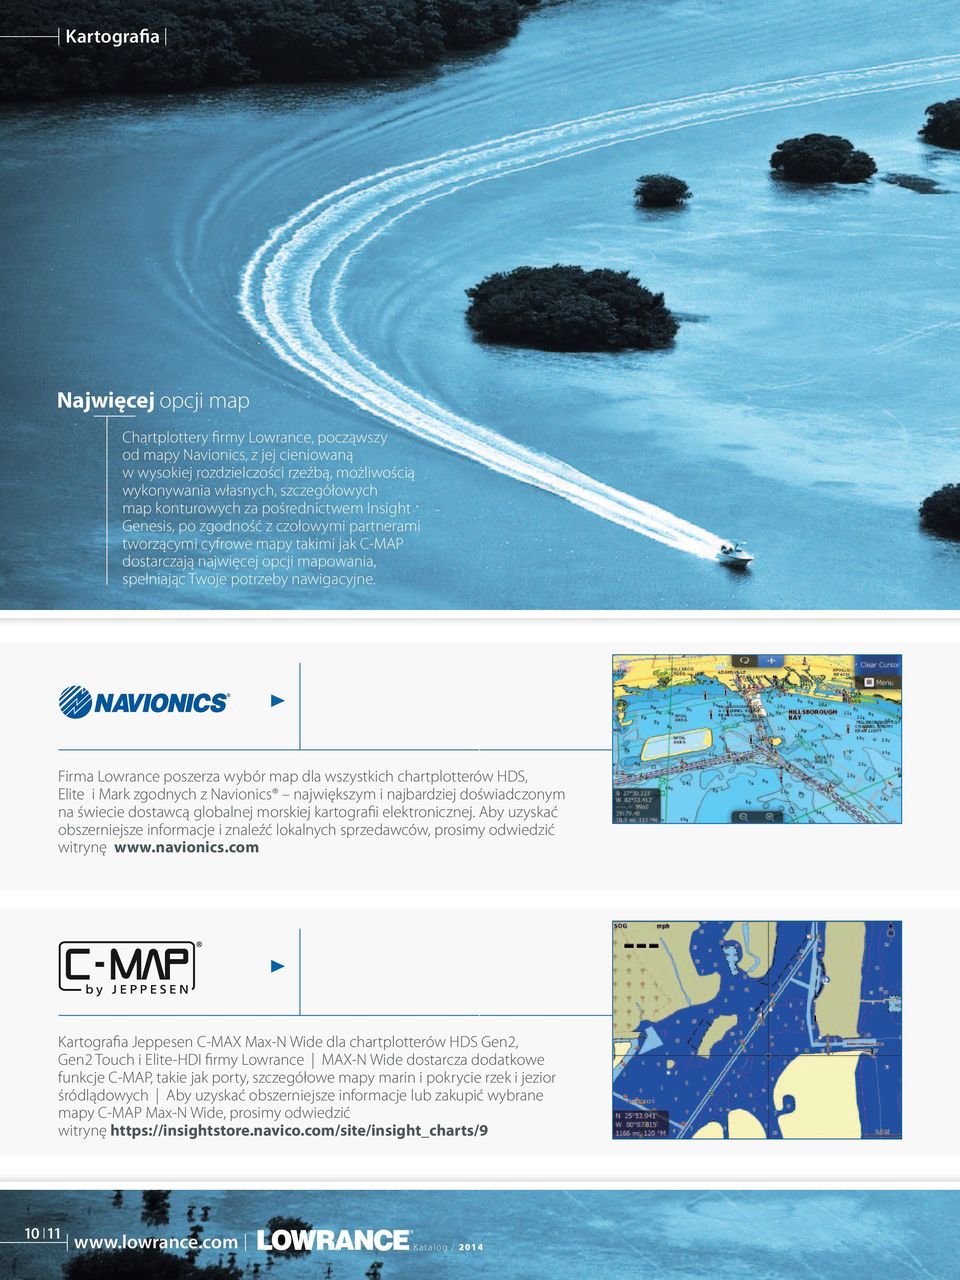 Firma Lowrance poszerza wybór map dla wszystkich chartplotterów HDS, Elite i Mark zgodnych z Navionics największym i najbardziej doświadczonym na świecie dostawcą globalnej morskiej kartografii